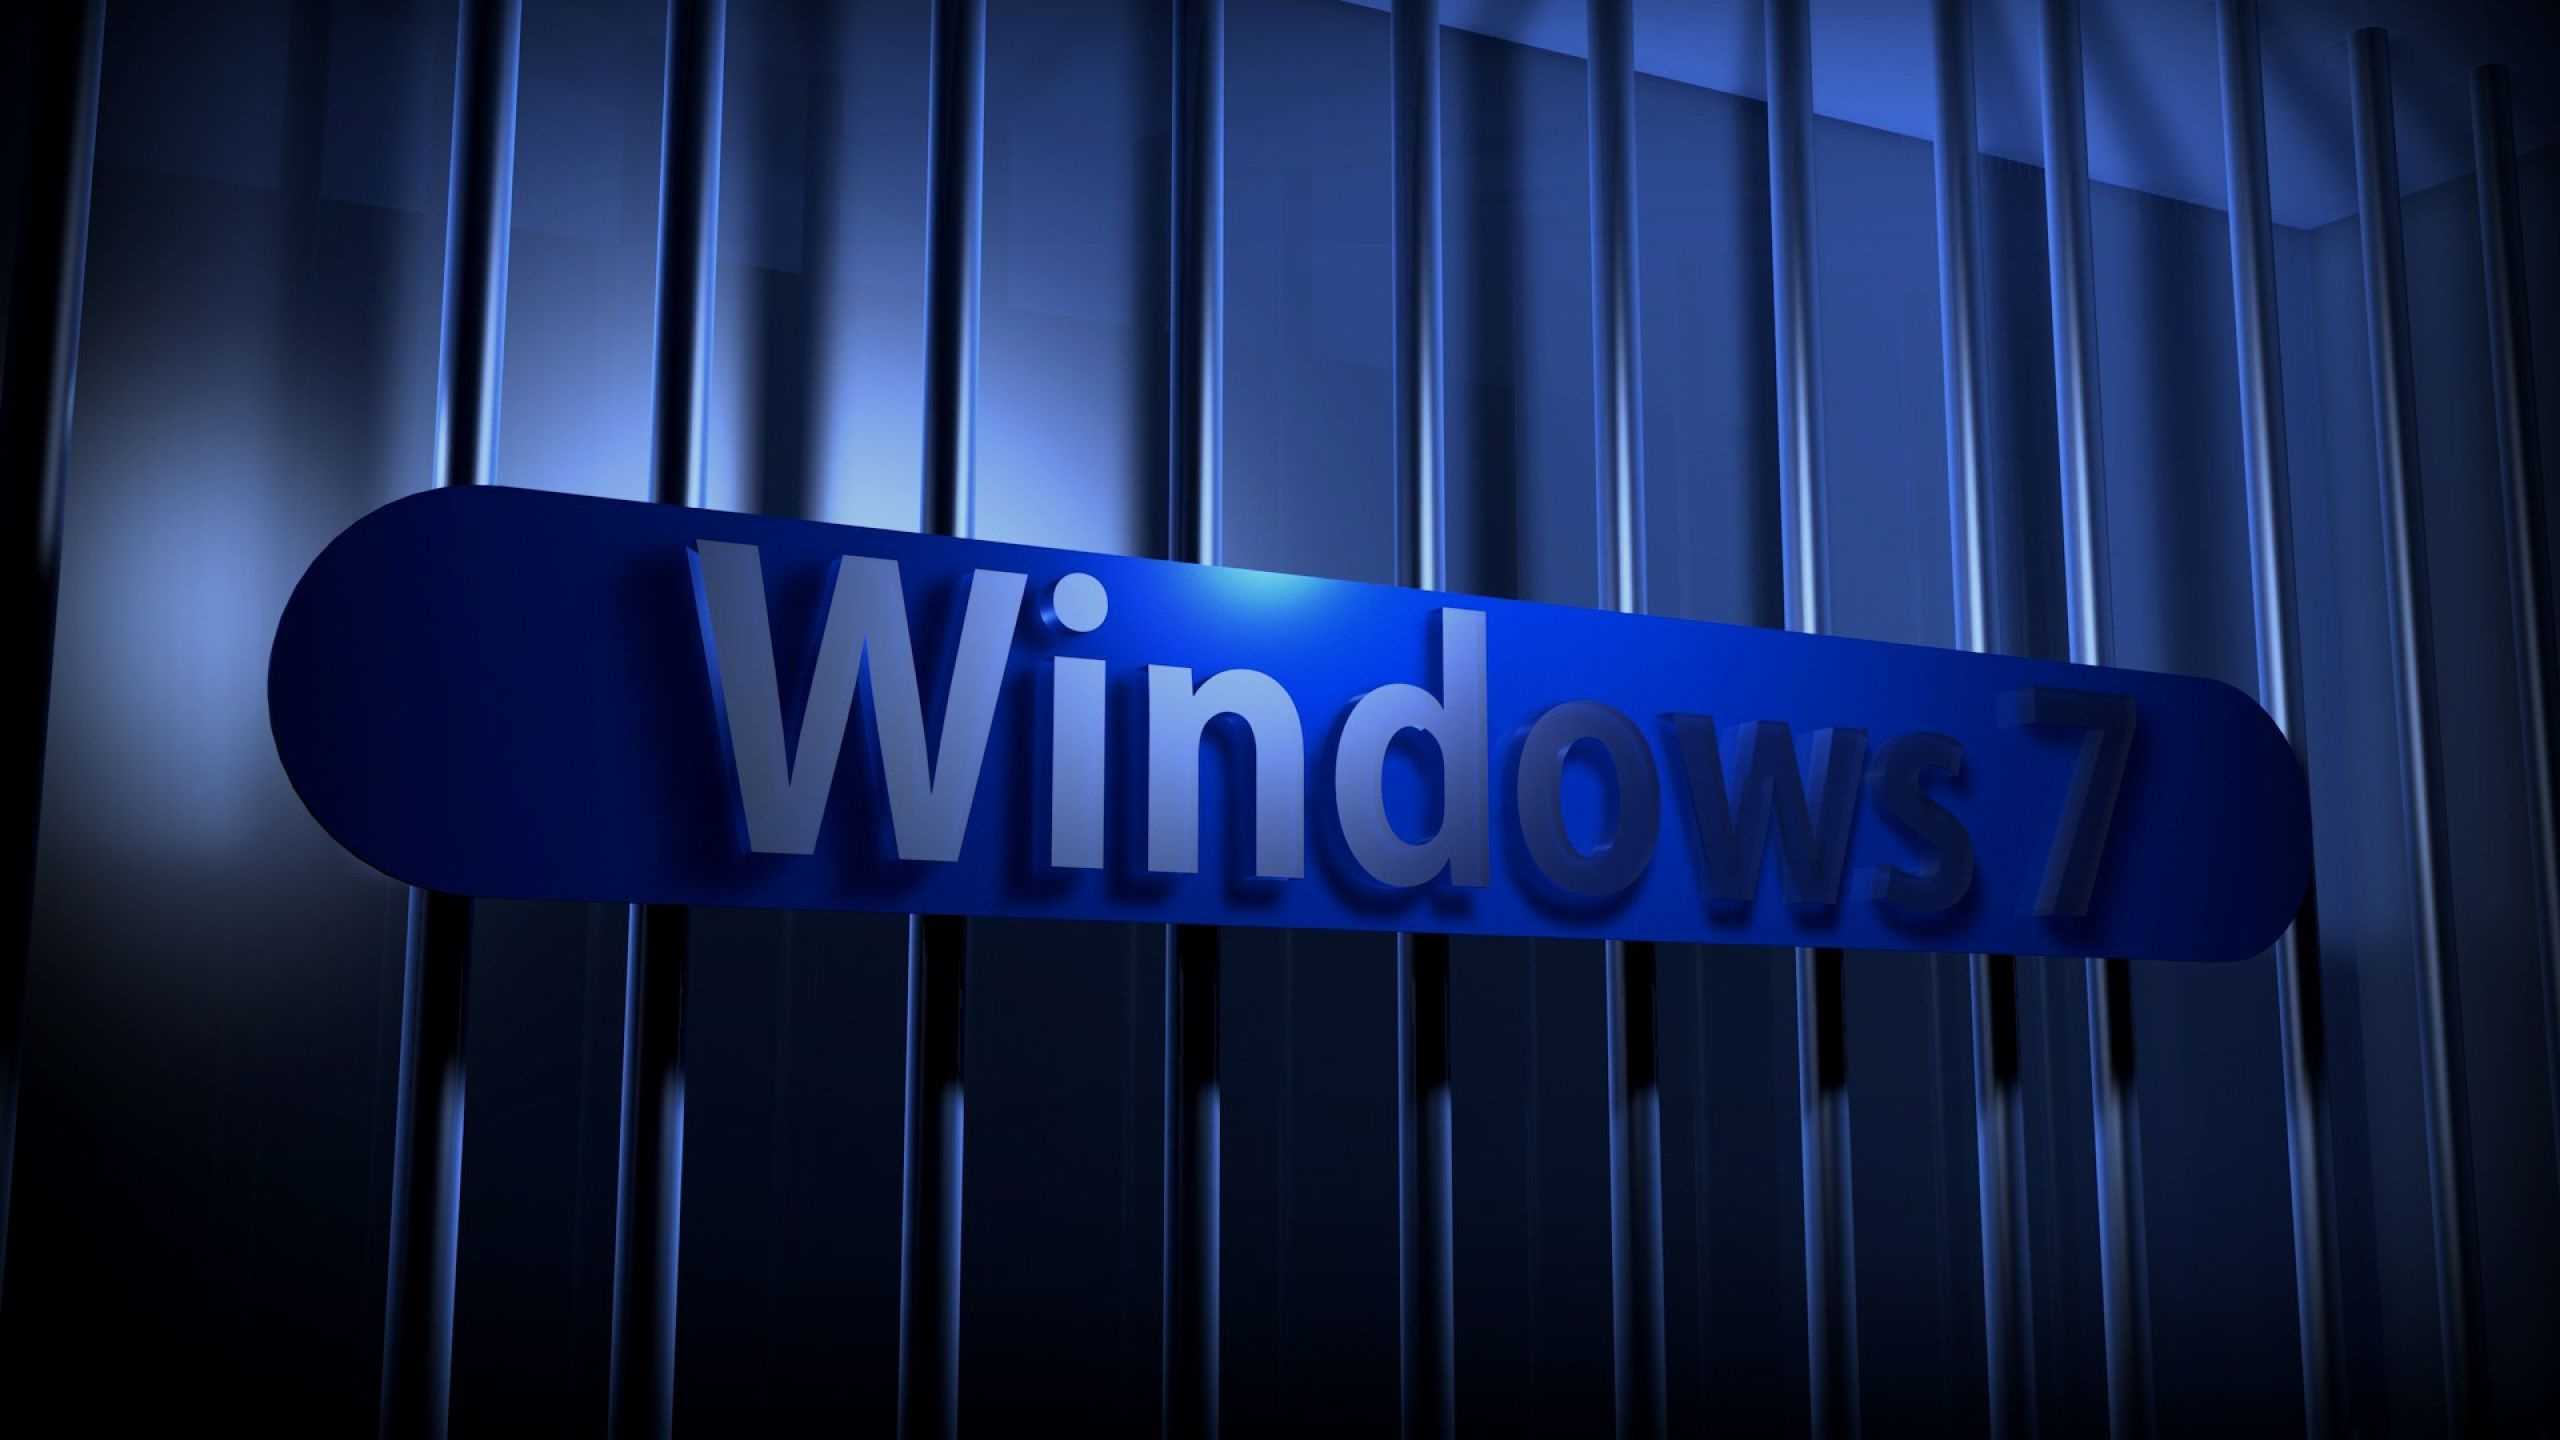 Windows 7, Blau, Licht, Electric Blue, Firmenzeichen. Wallpaper in 2560x1440 Resolution